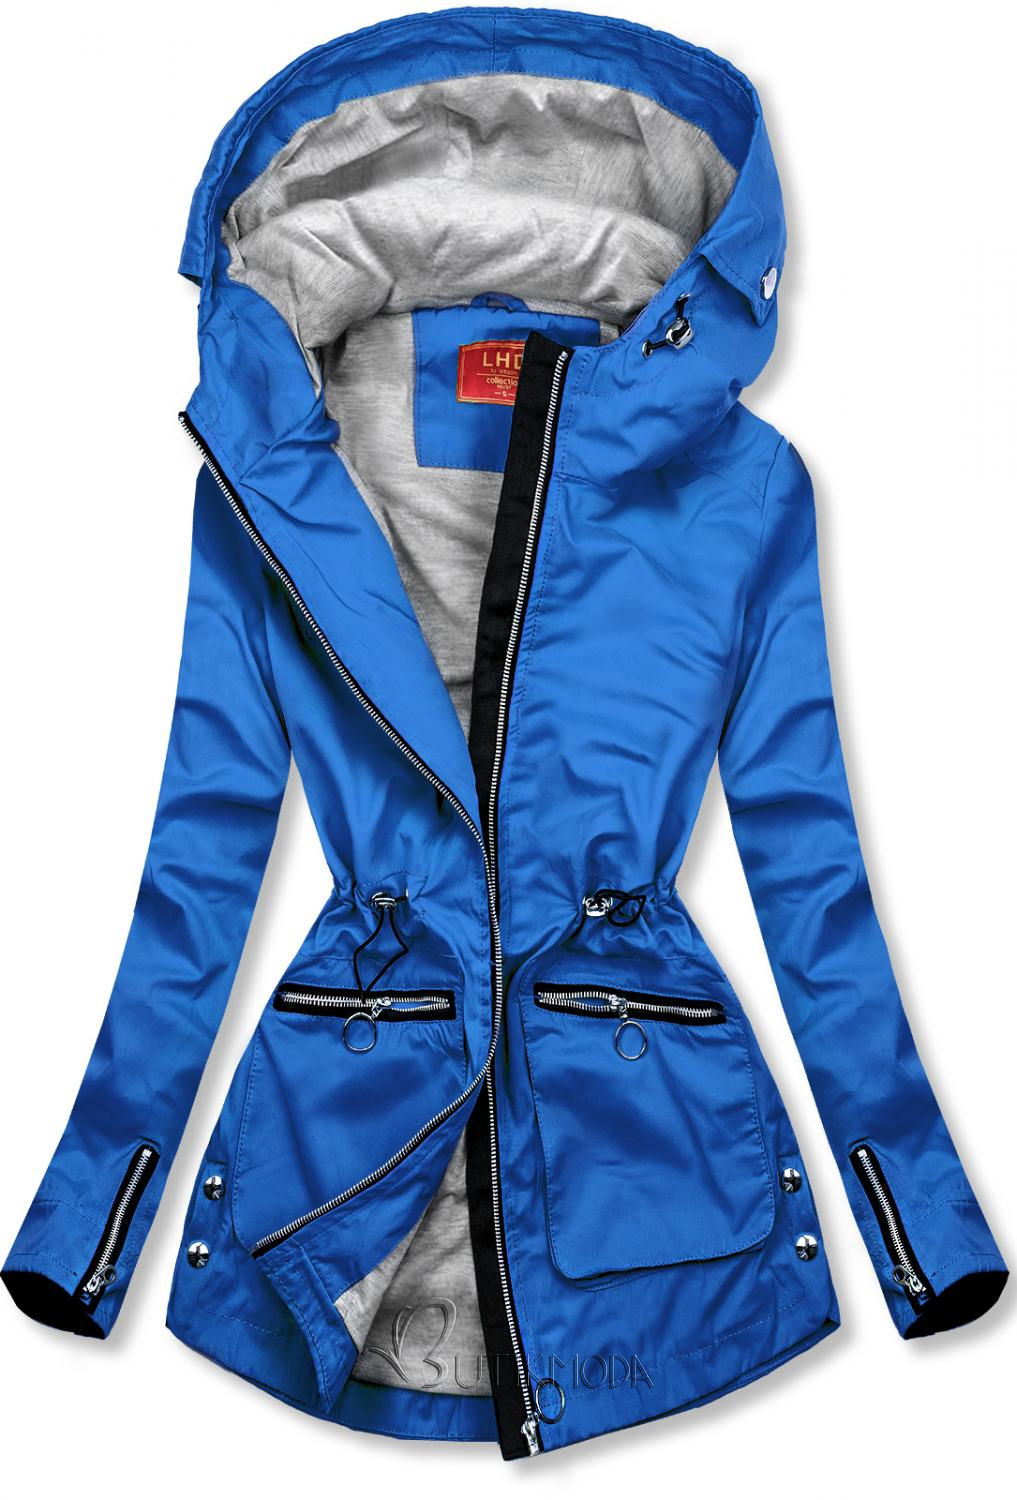 Blue spring parka jacket